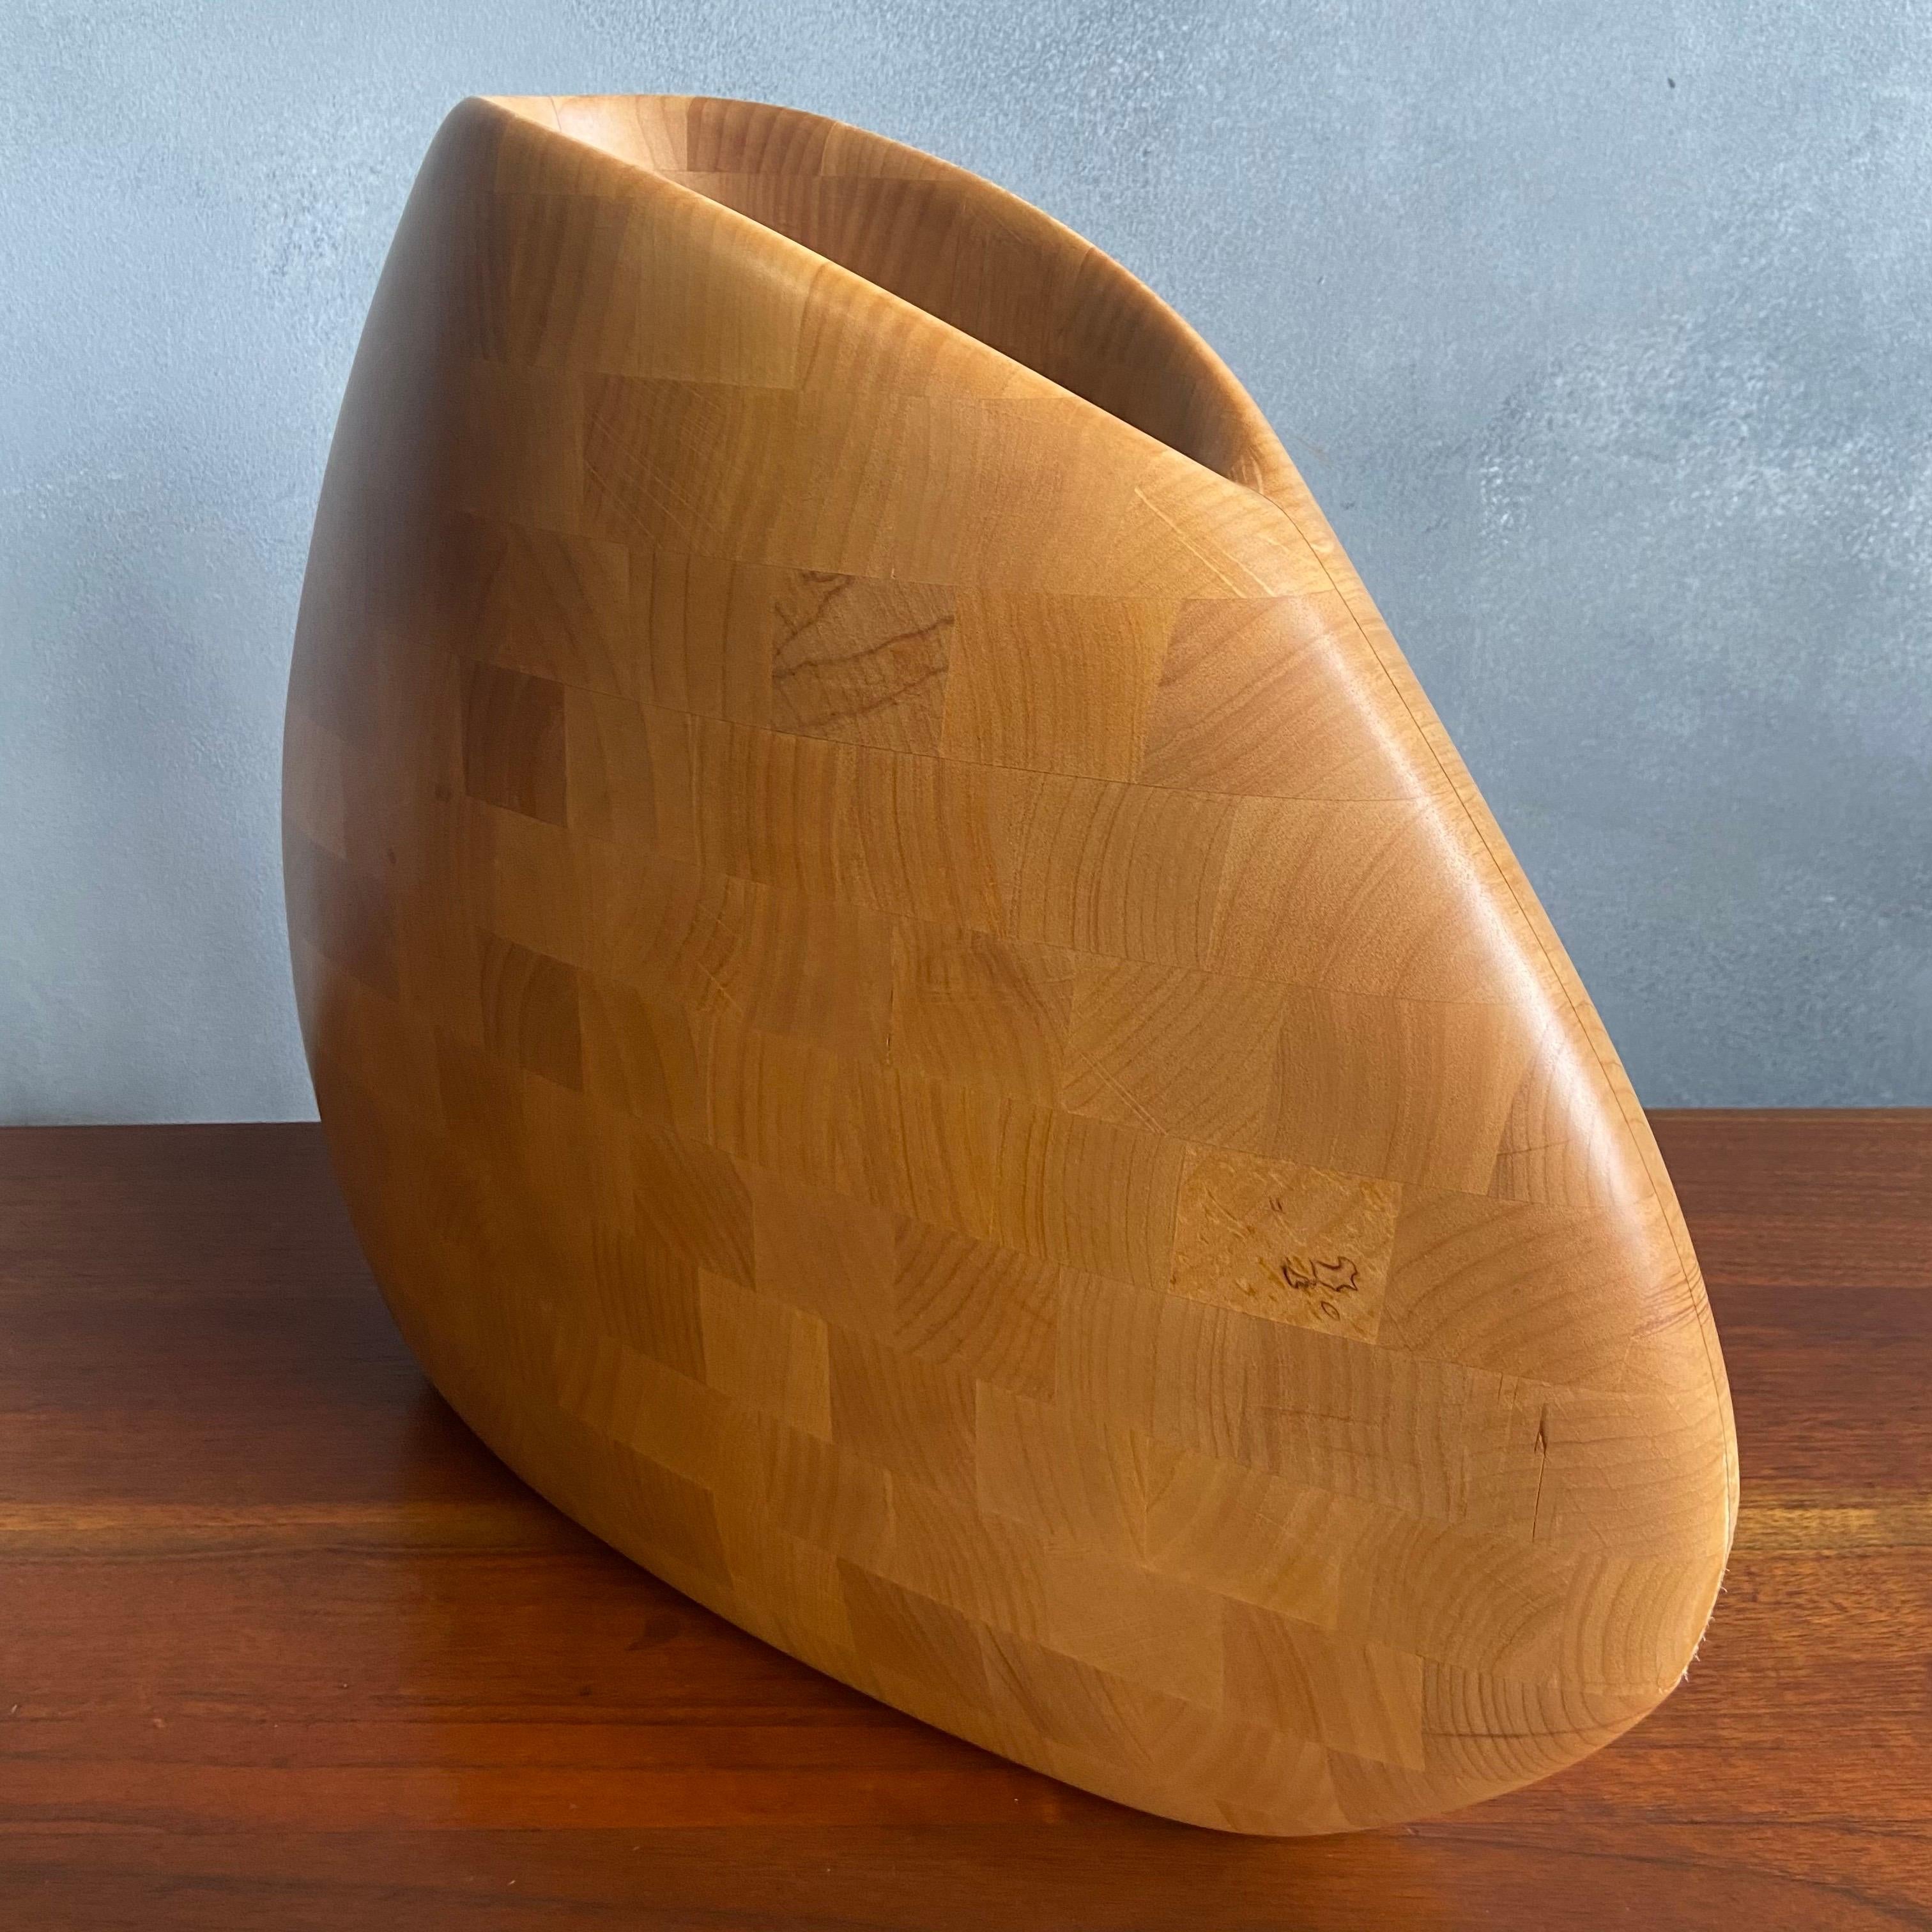 Nous vous proposons ce vase magnifiquement sculpté par le maître artisan Dean Santner. Les créations de Santner font partie du mouvement American Modern Craft, aux côtés de Wendell Castle, Nakashima, Phillip Powell, pour n'en citer que quelques-uns.